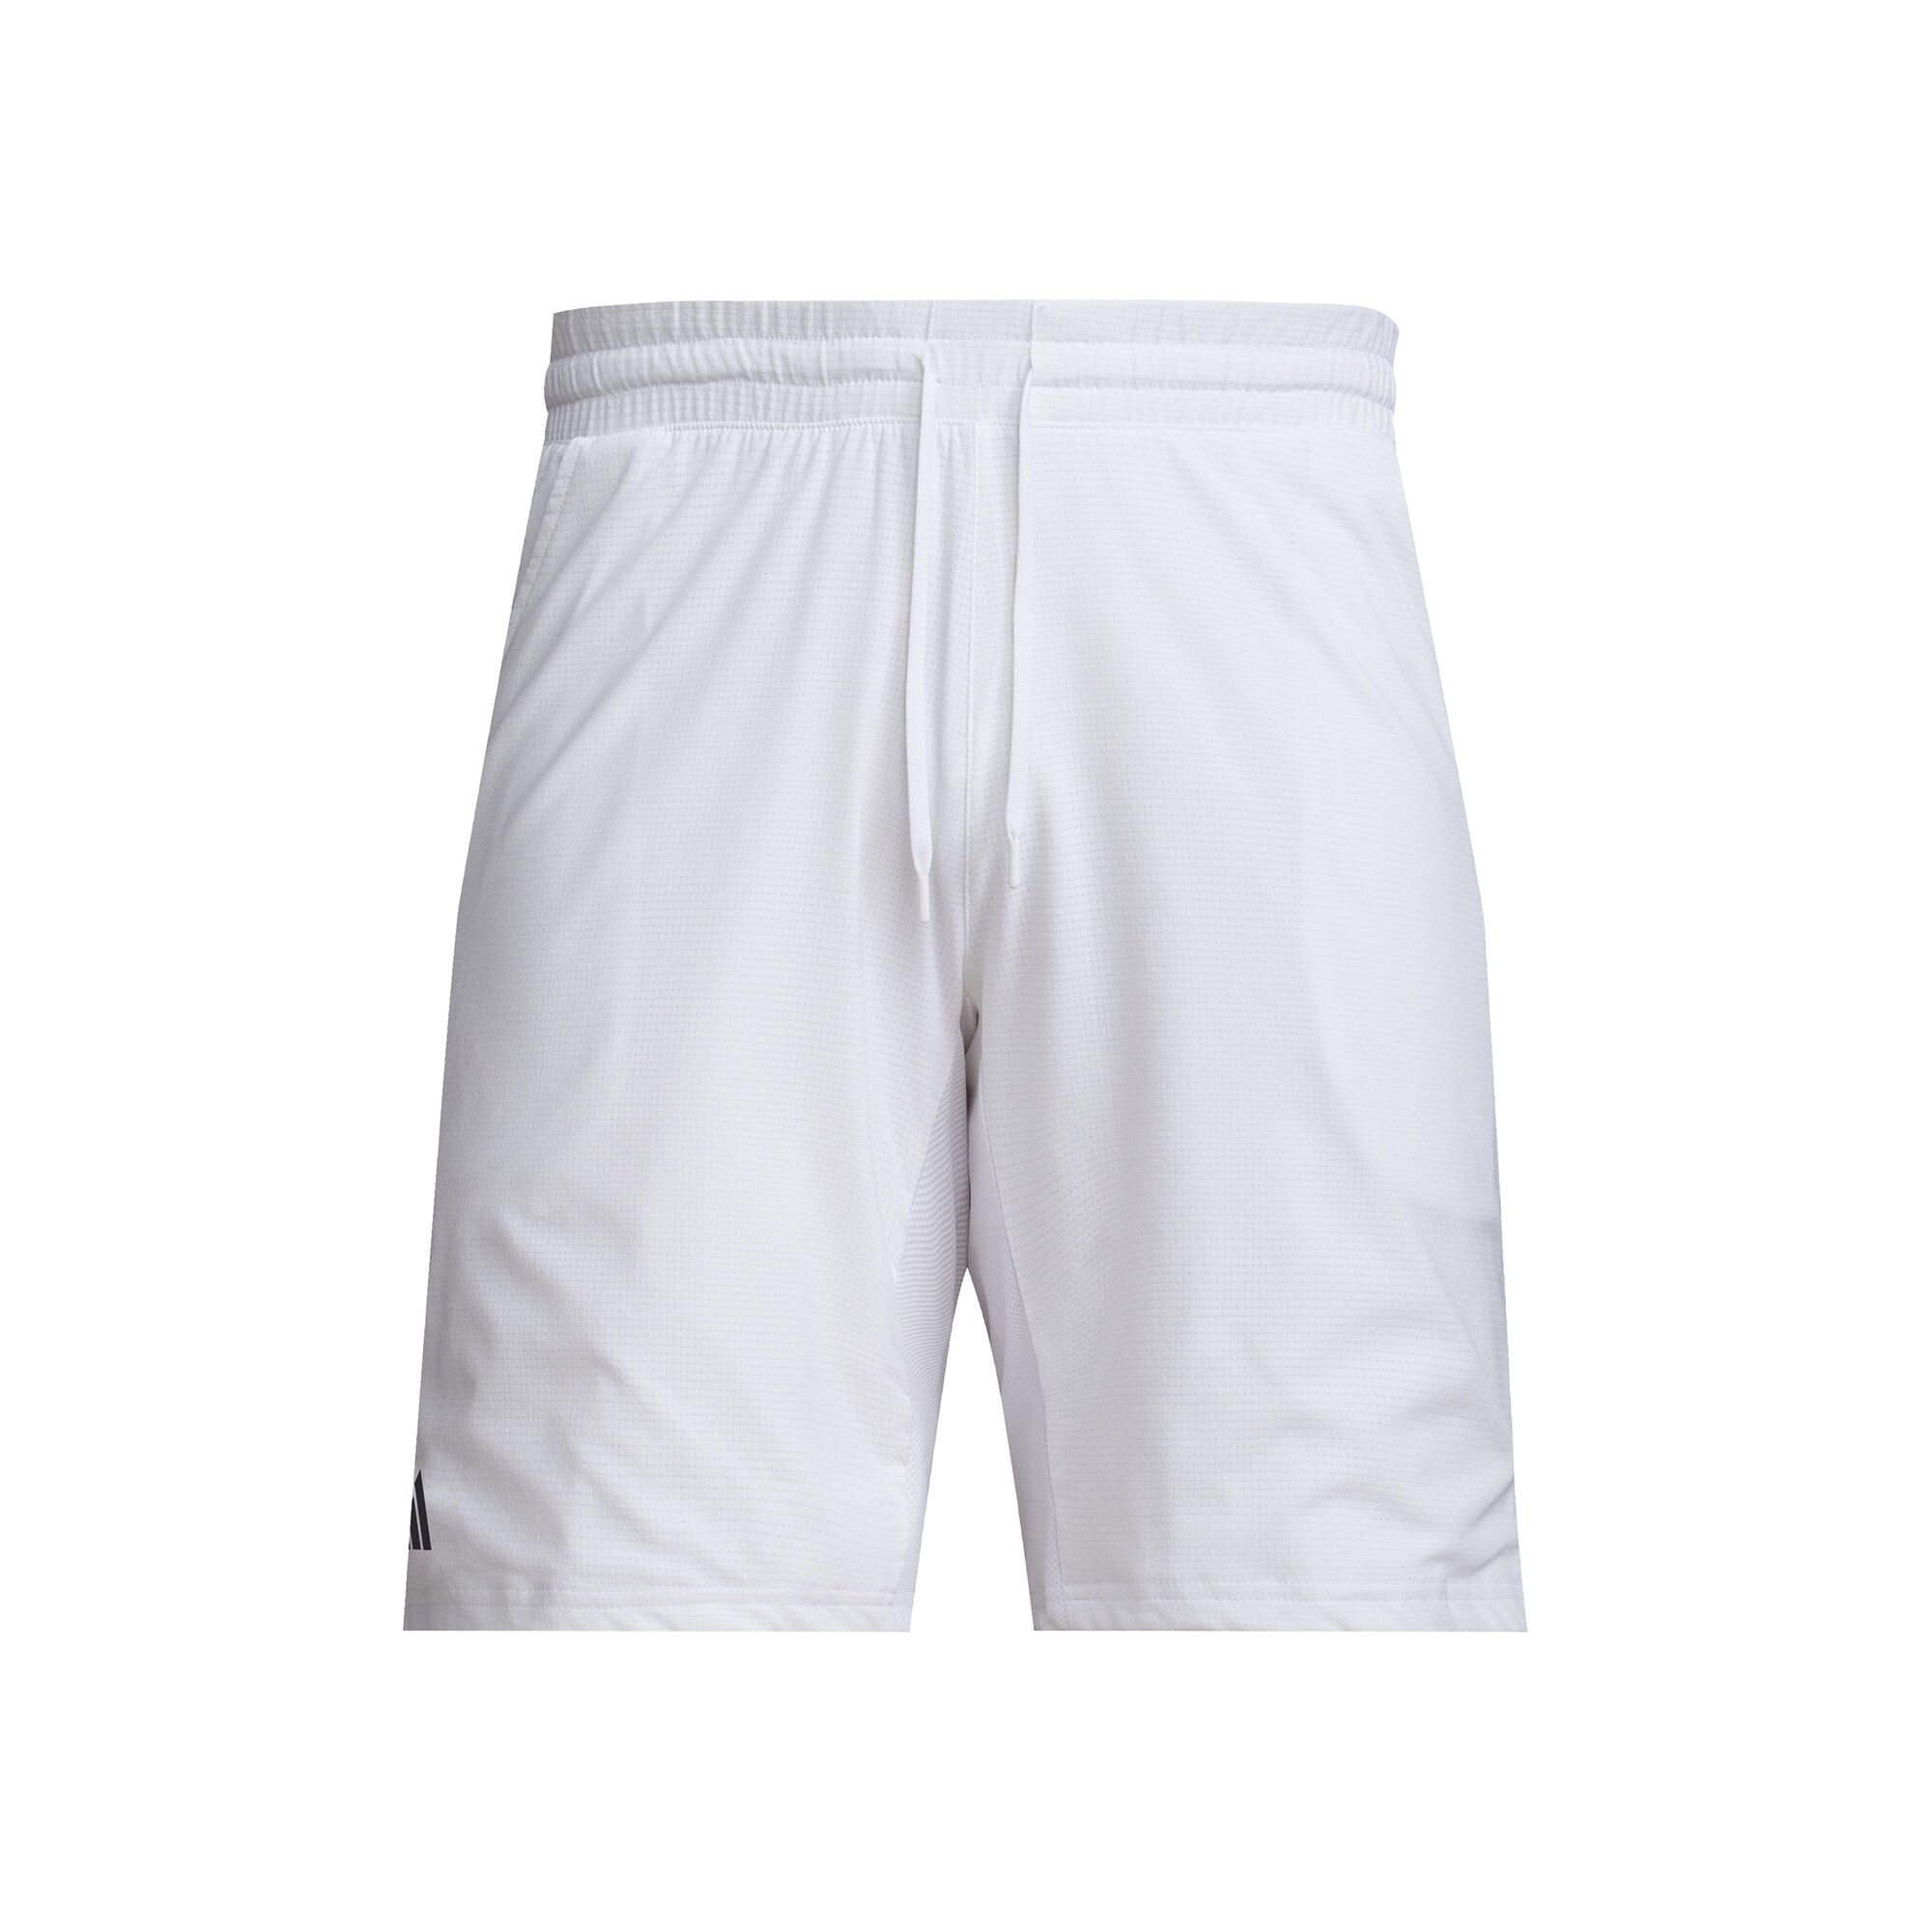 adidas Ergo Tennis Shorts - White